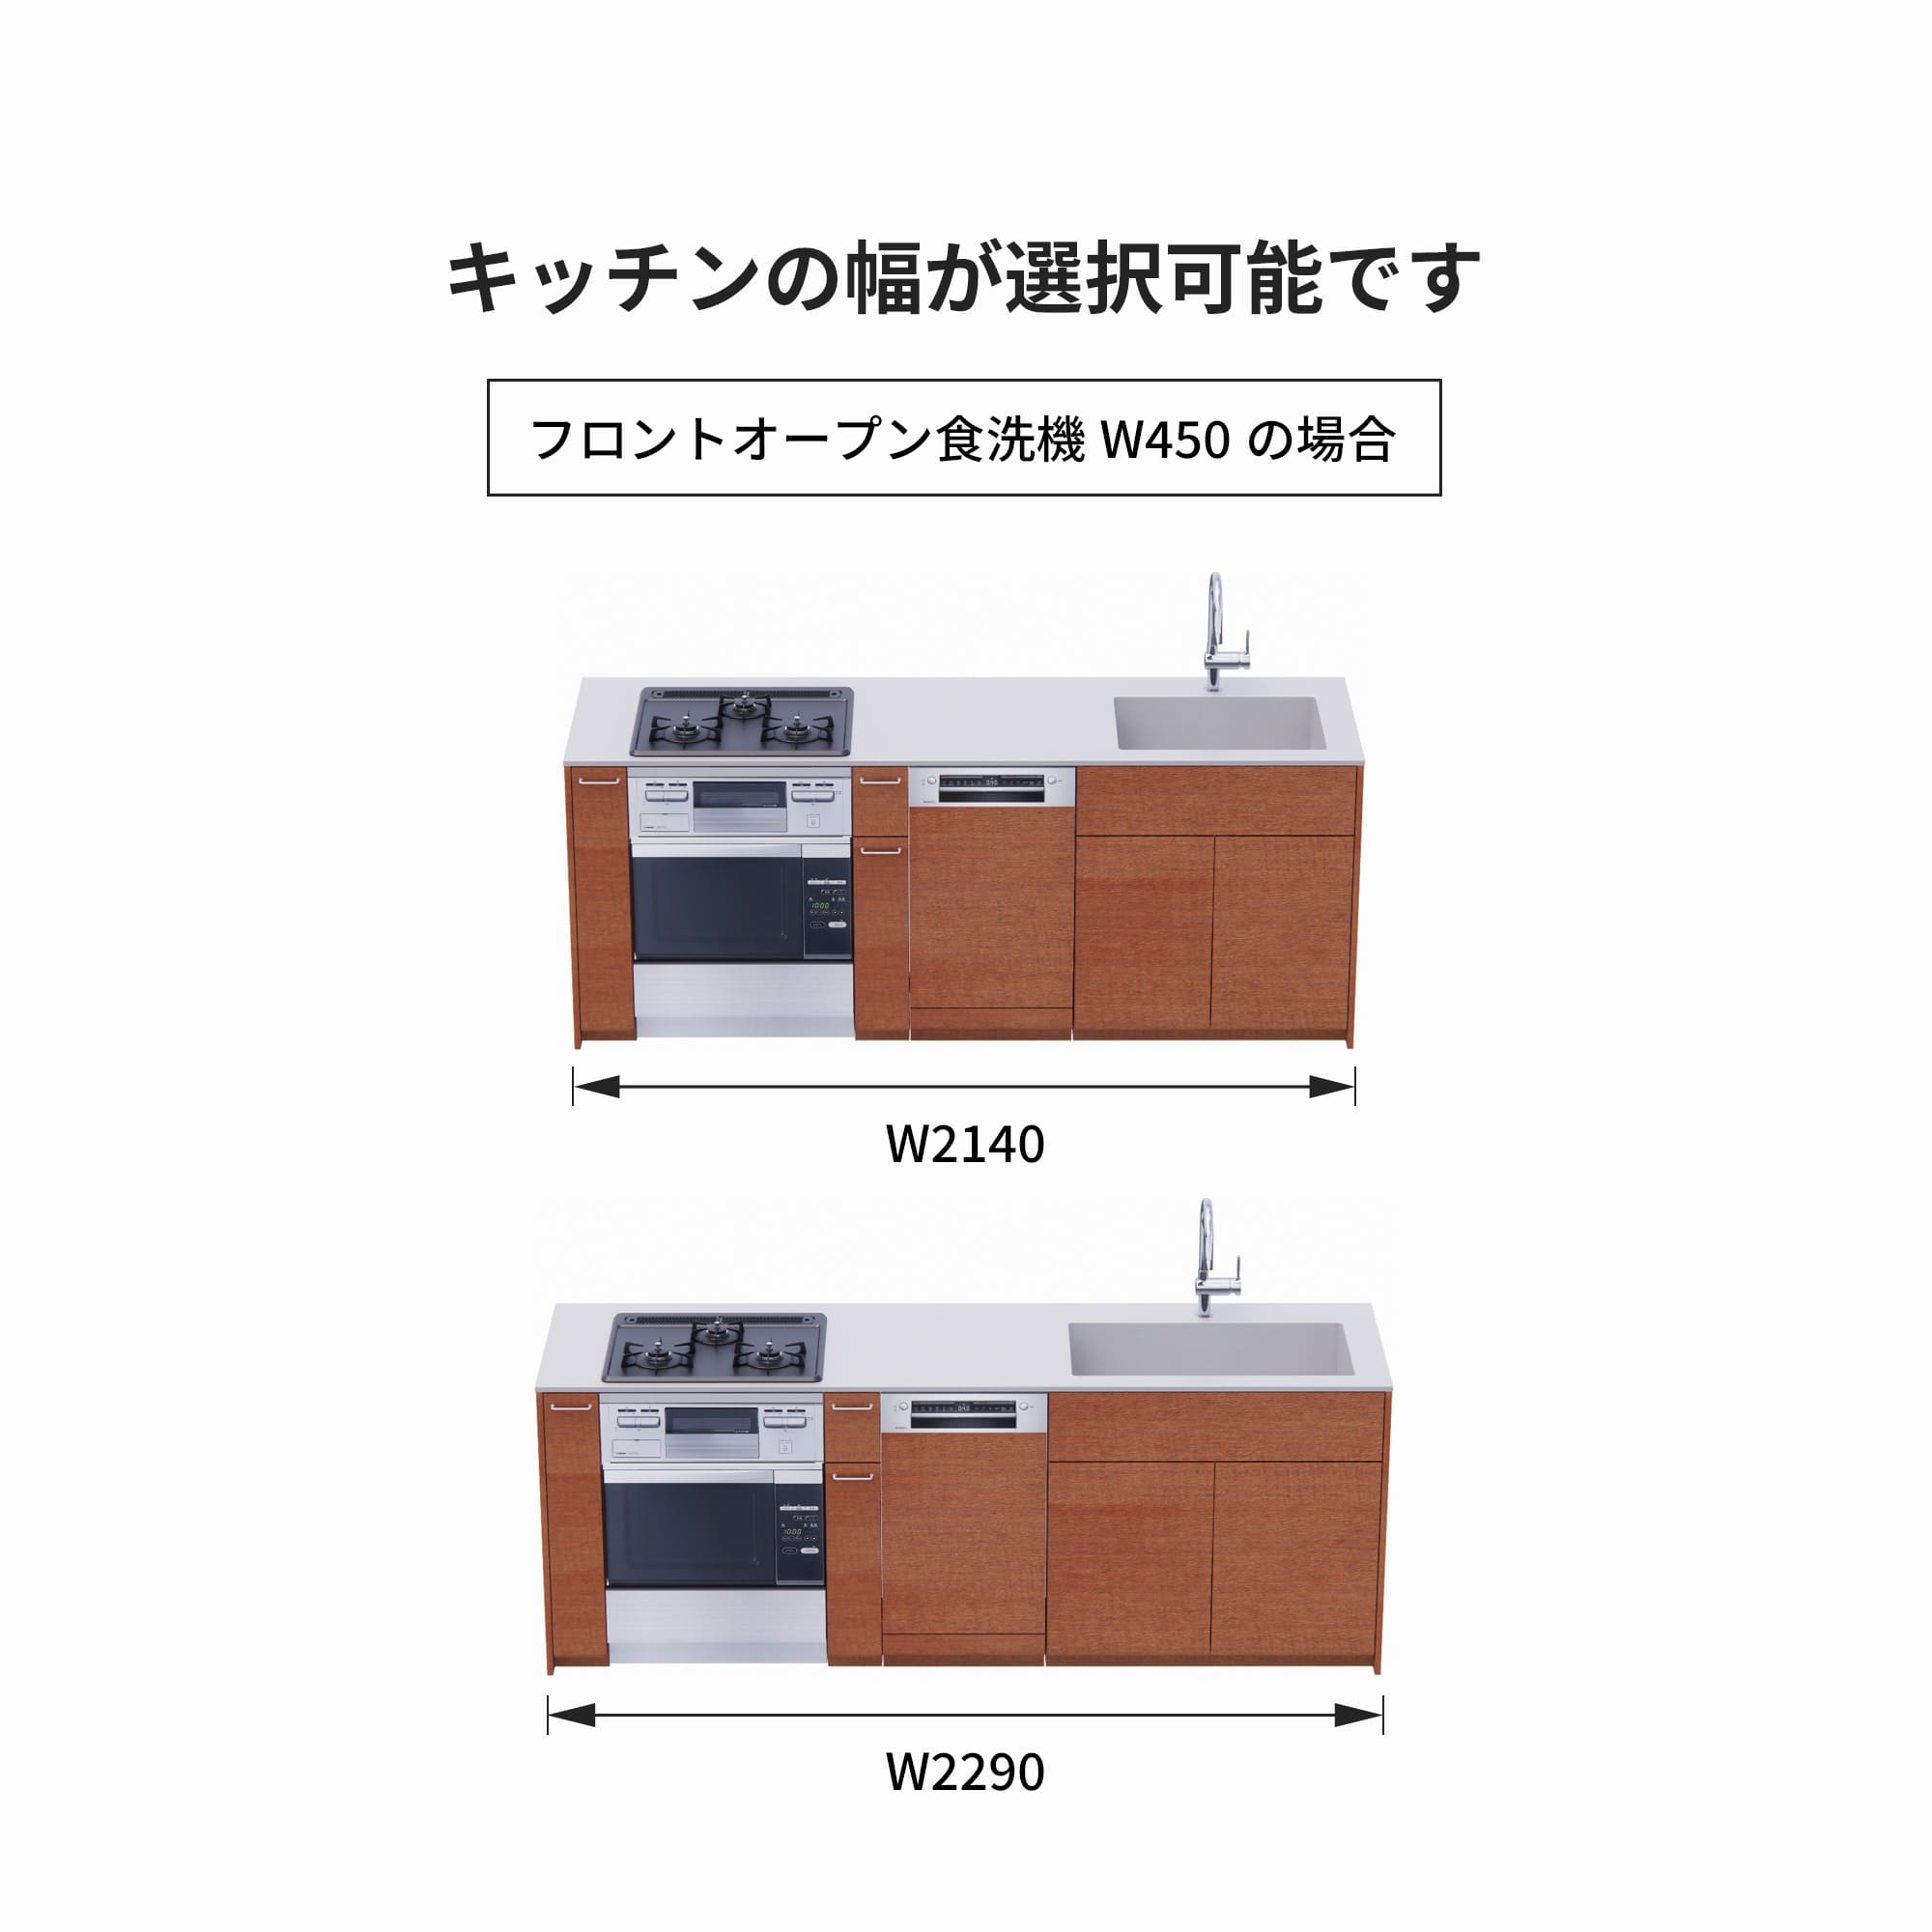 木製システムキッチン 対面型 W2140～2290・コンロあり / オーブンあり / 食洗機あり KB-KC022-40-G183 フロントオープン450の場合